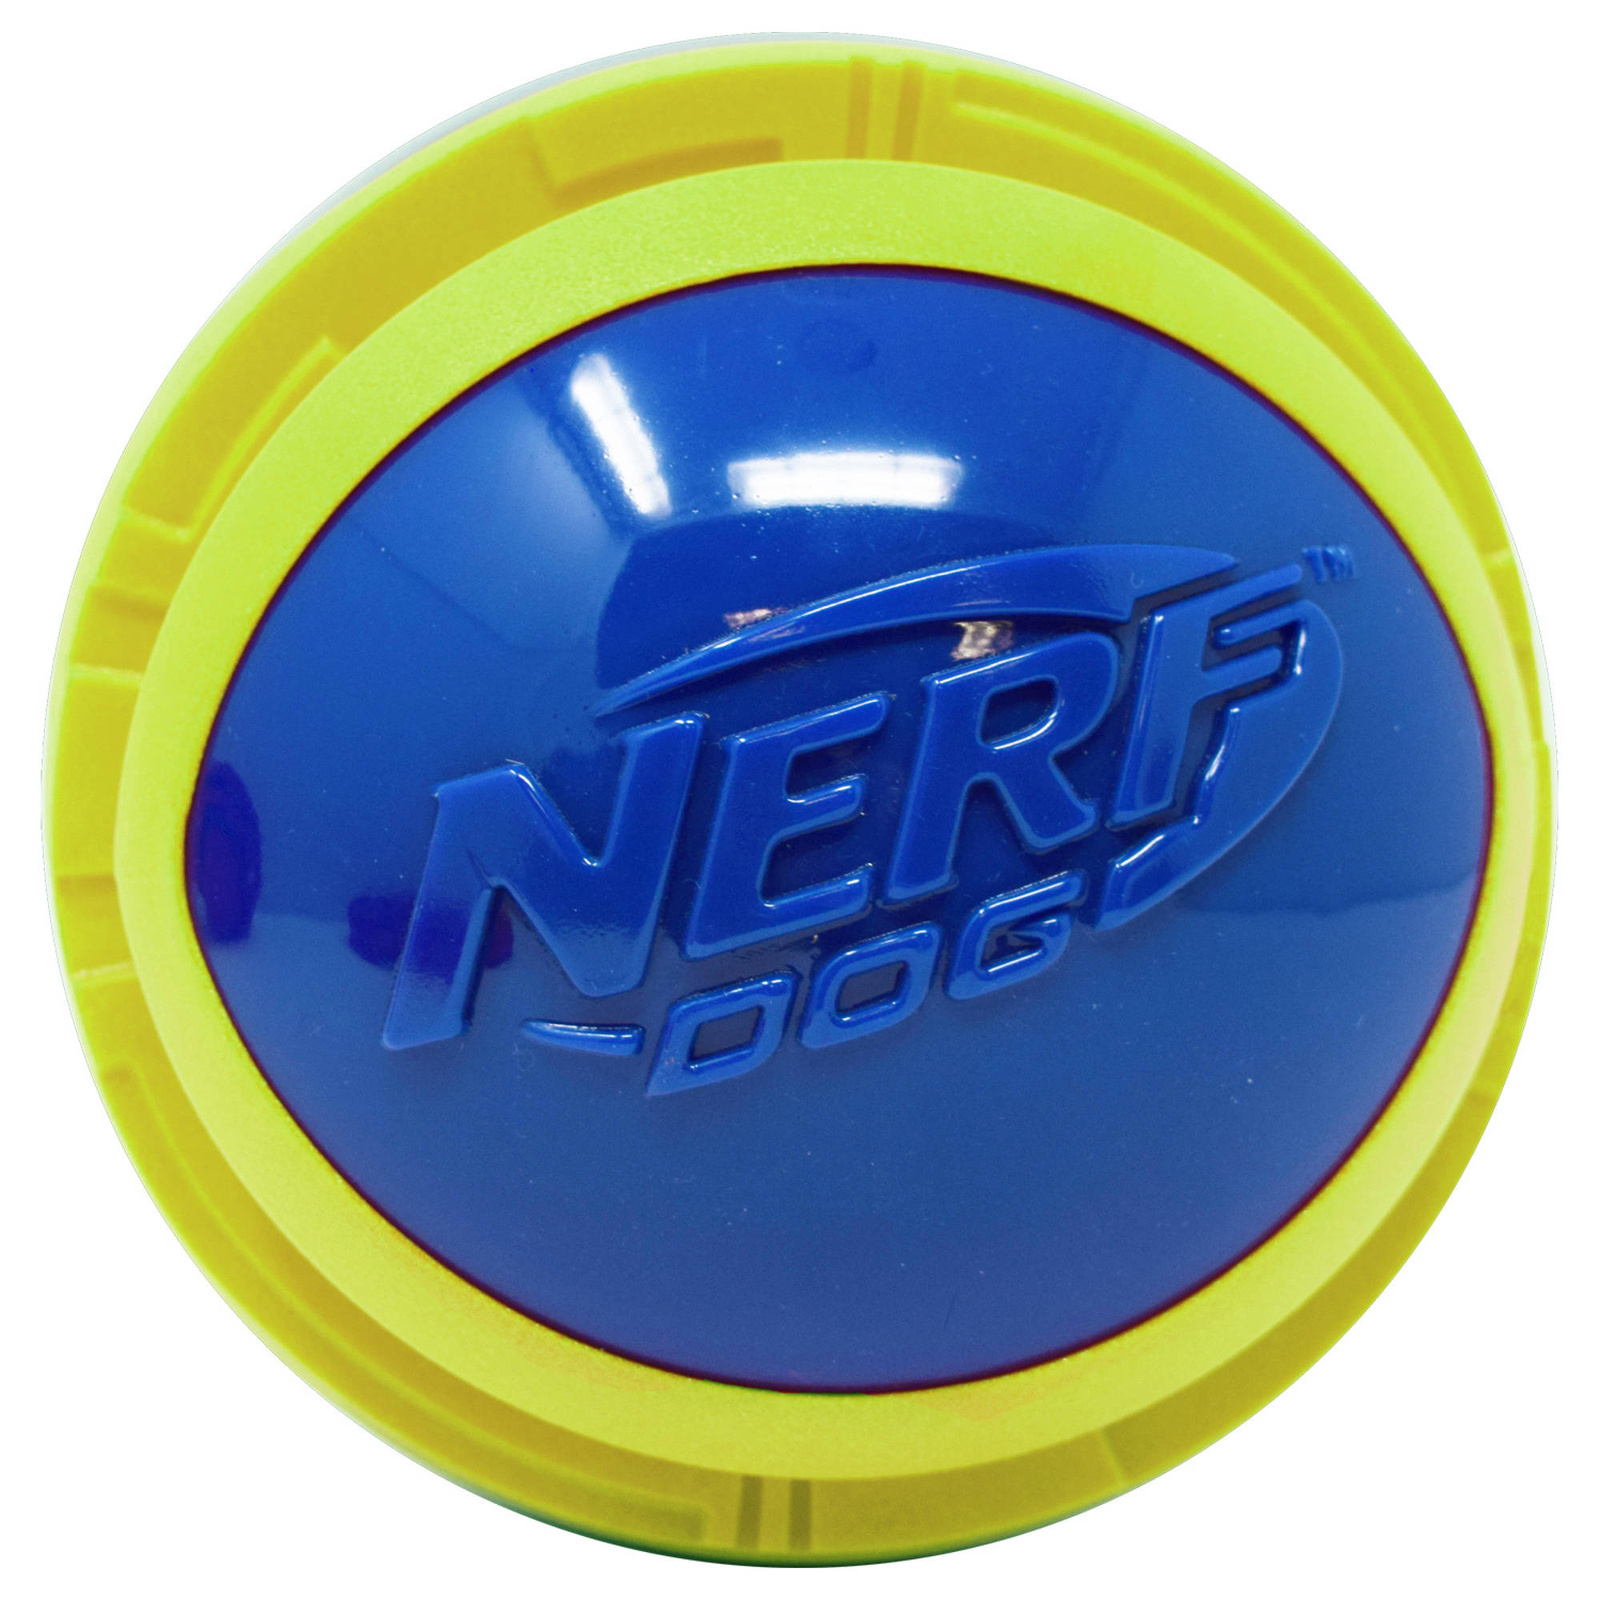 Nerf Nerf мяч из вспененной резины и термопластичной резины,14 см (серия Мегатон), (синий/зеленый) (390 г) nerf nerf мяч светящийся прозрачный 8 см синий зеленый 159 г